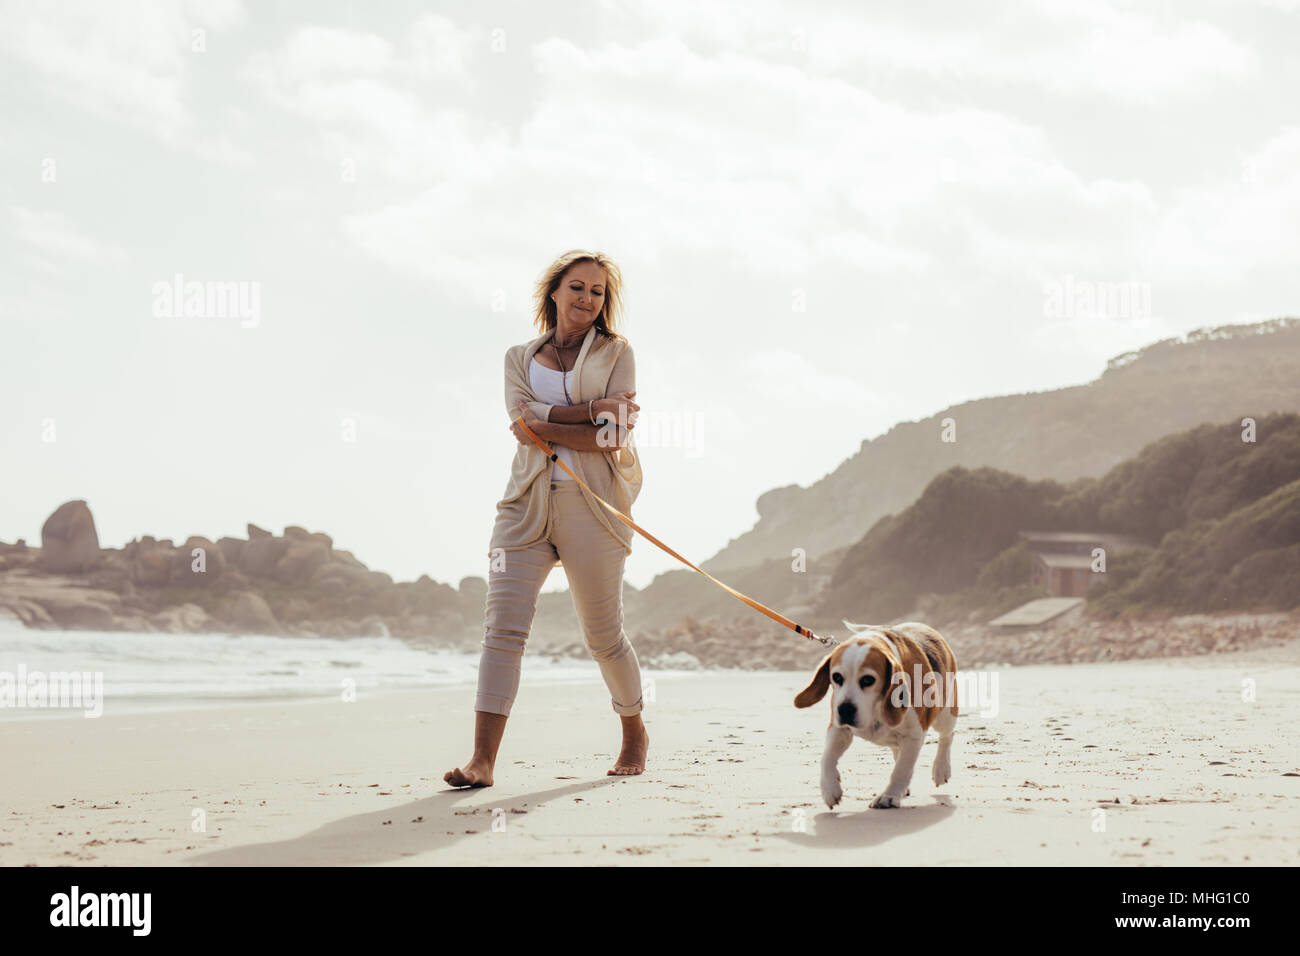 Toute la longueur de balle en tenant son chien en promenade sur la plage. Hauts femme sur matin à pied avec son chien. Banque D'Images